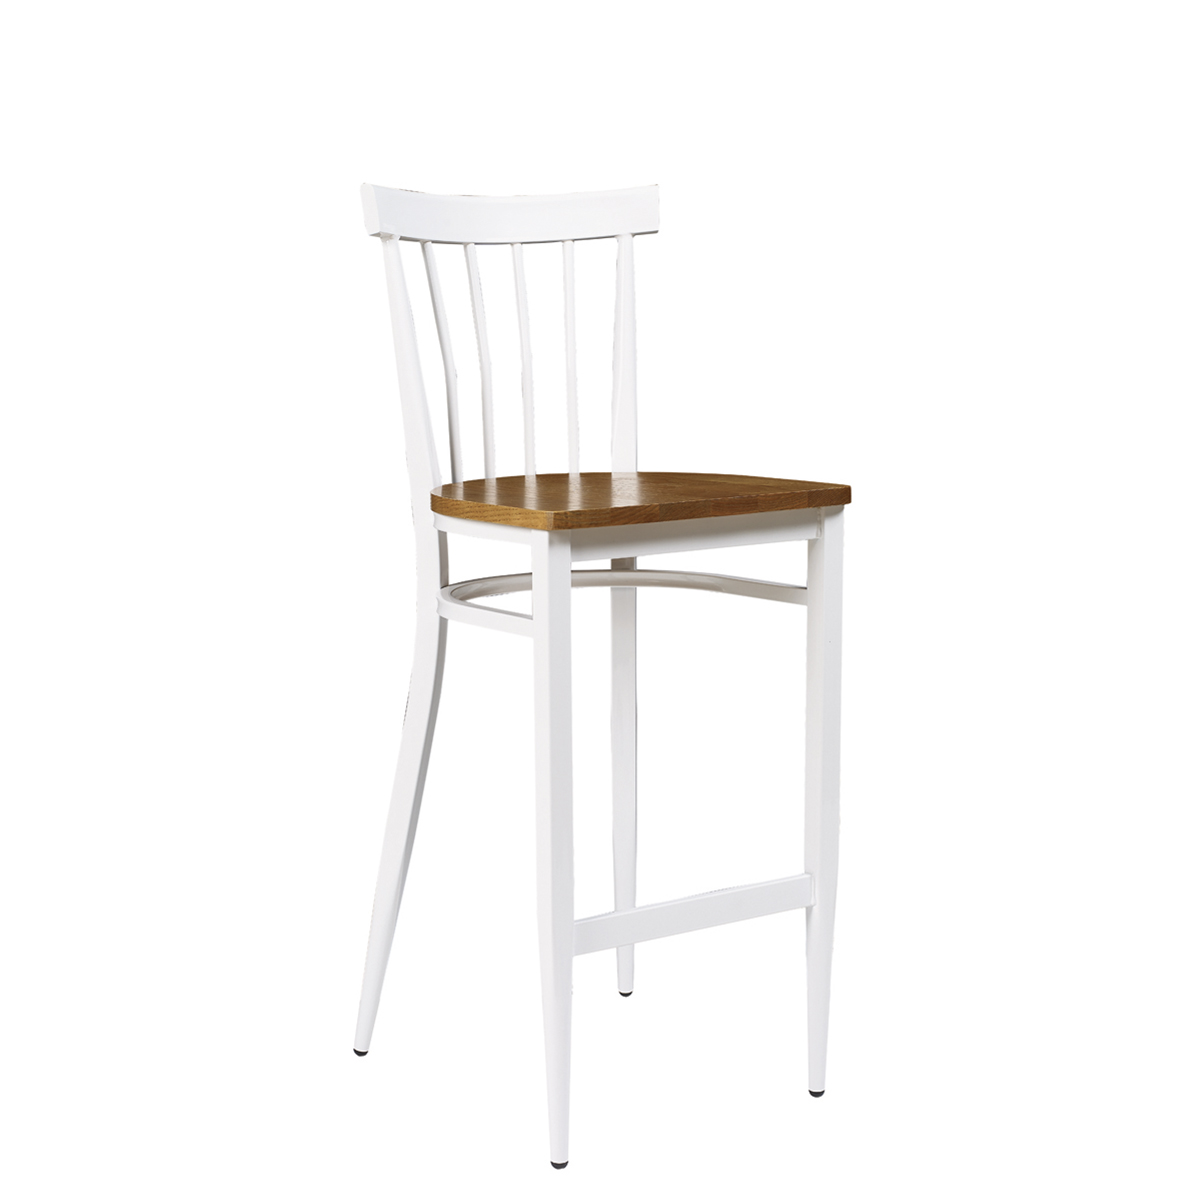 banqueta baltimore pintada blanco con asiento macizo